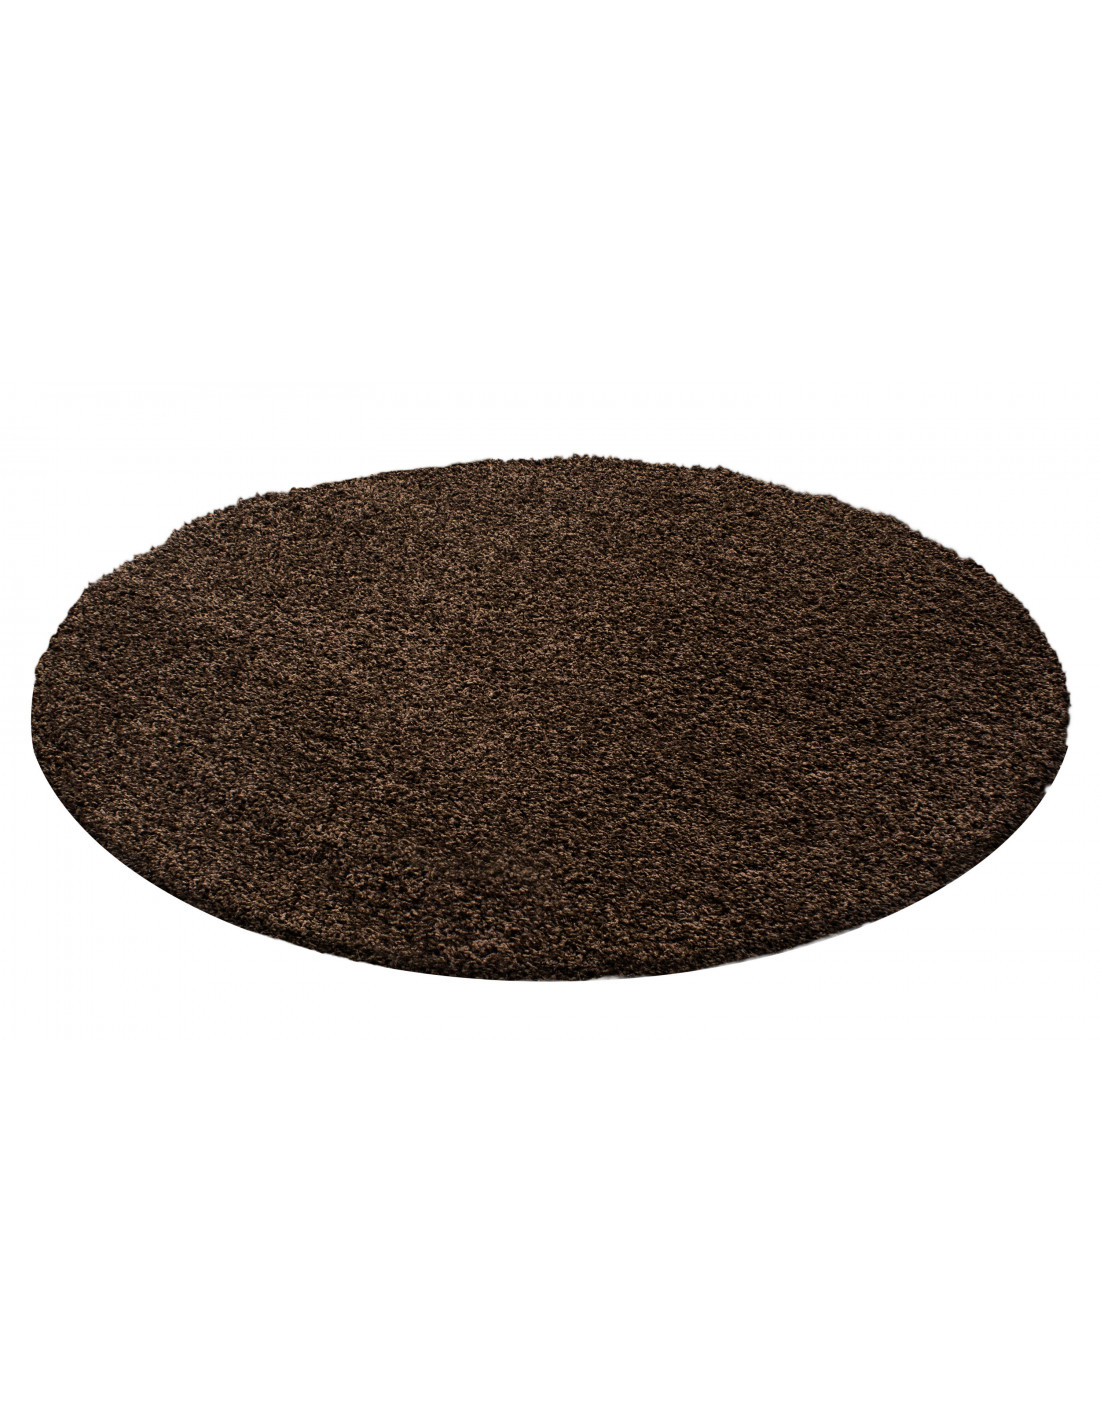 Shaggy matta, lugghöjd 3 cm, enfärgad brun